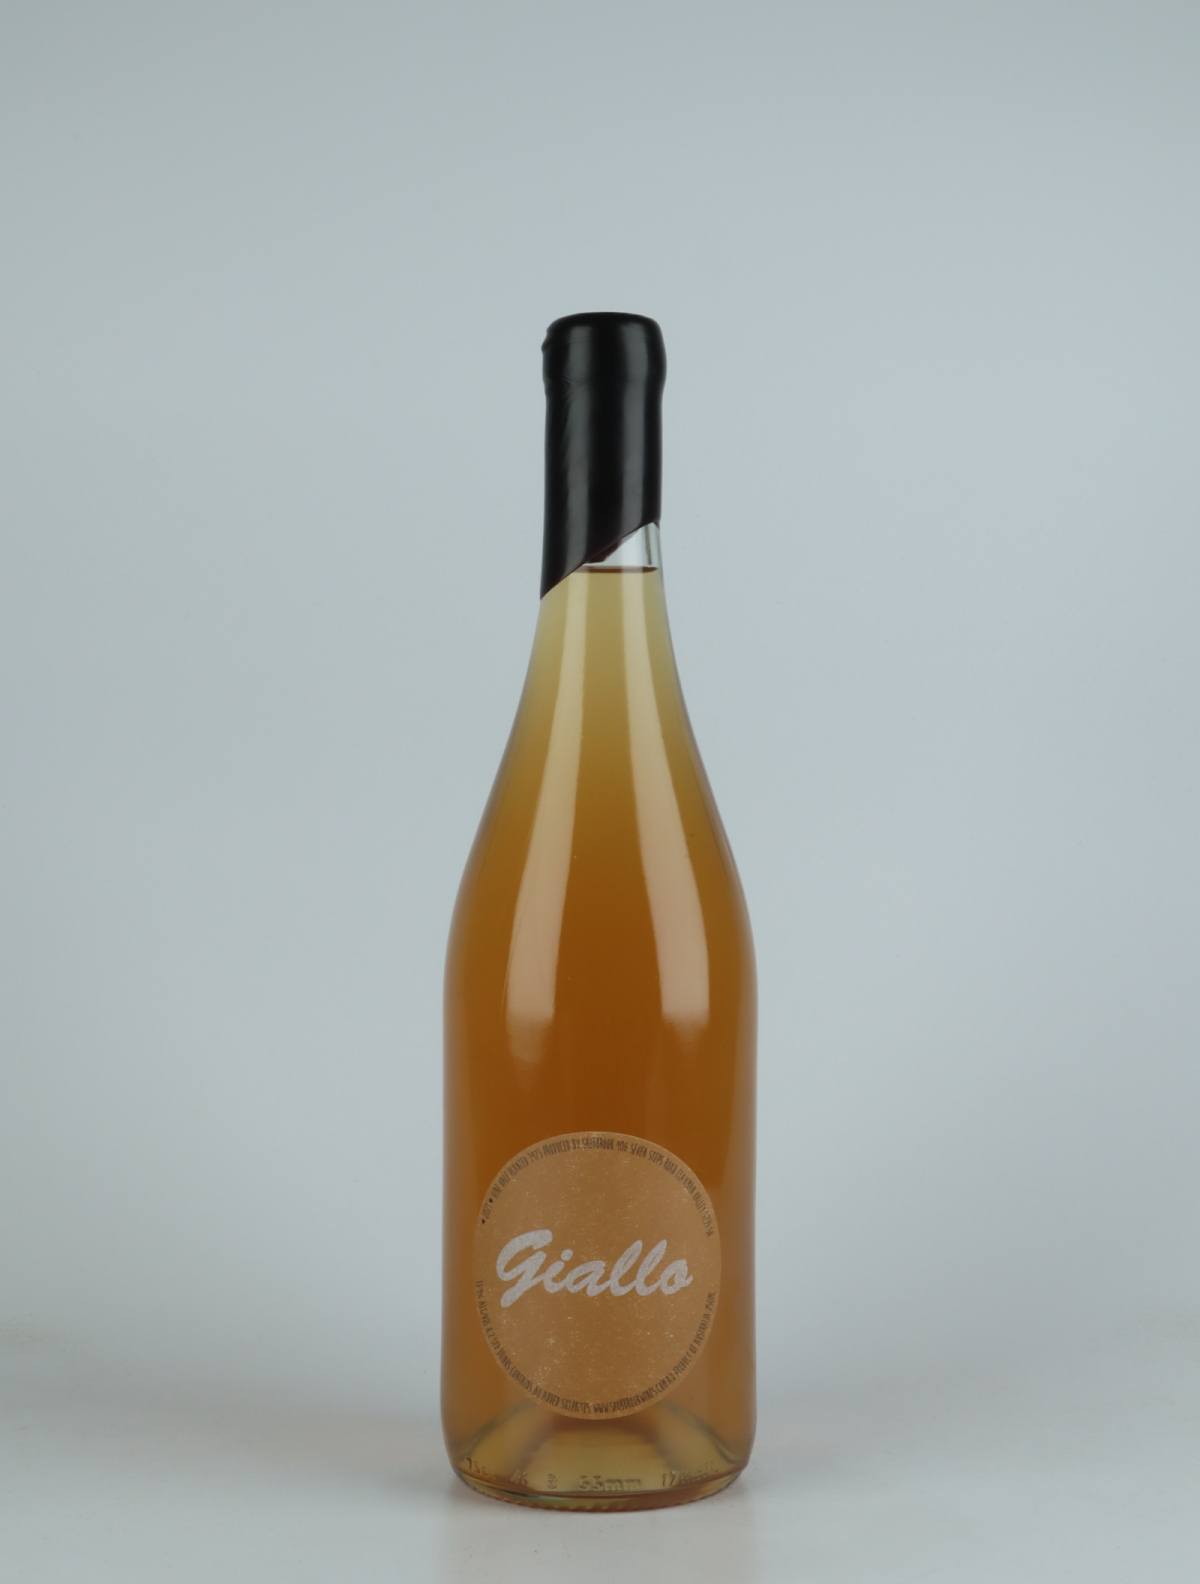 En flaske 2021 Giallo Orange vin fra Tom Shobbrook, Adelaide Hills i Australien